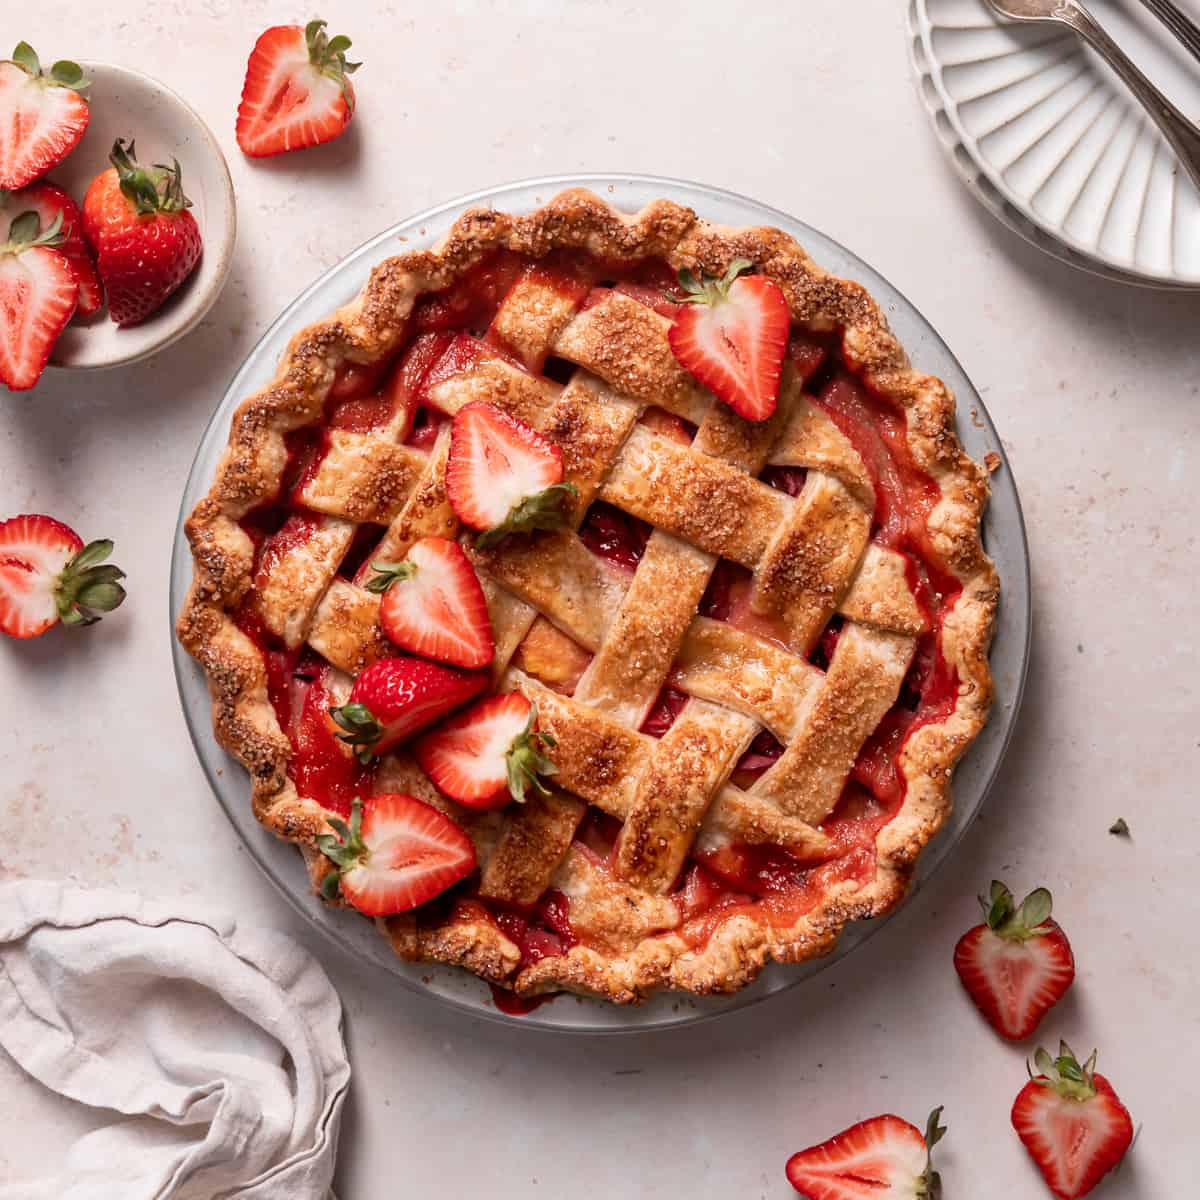 Peach-Raspberry Pie With Press-In Crust Recipe